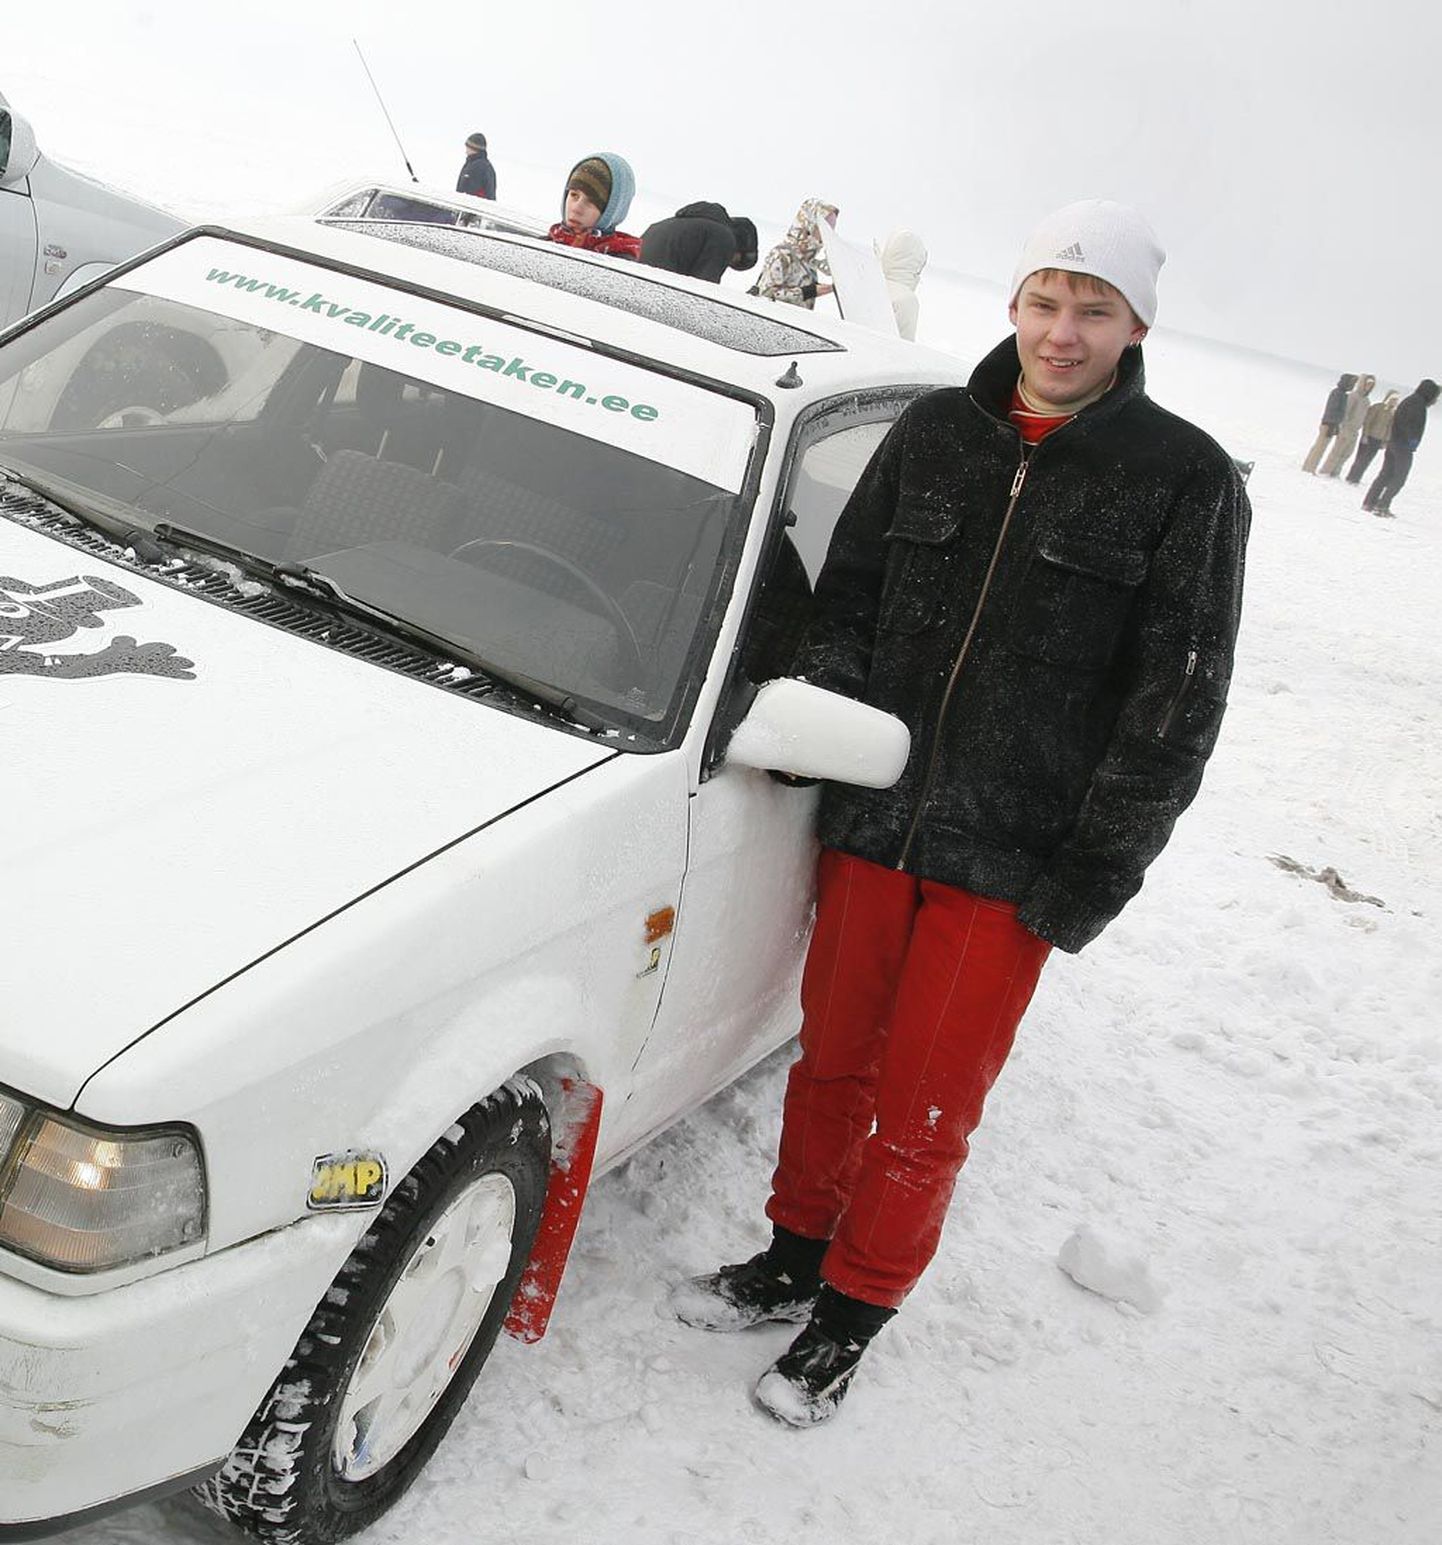 Mazdal kihutanud Kabli noormees Kairo Kallas tegi 4WD klassis puhta töö.